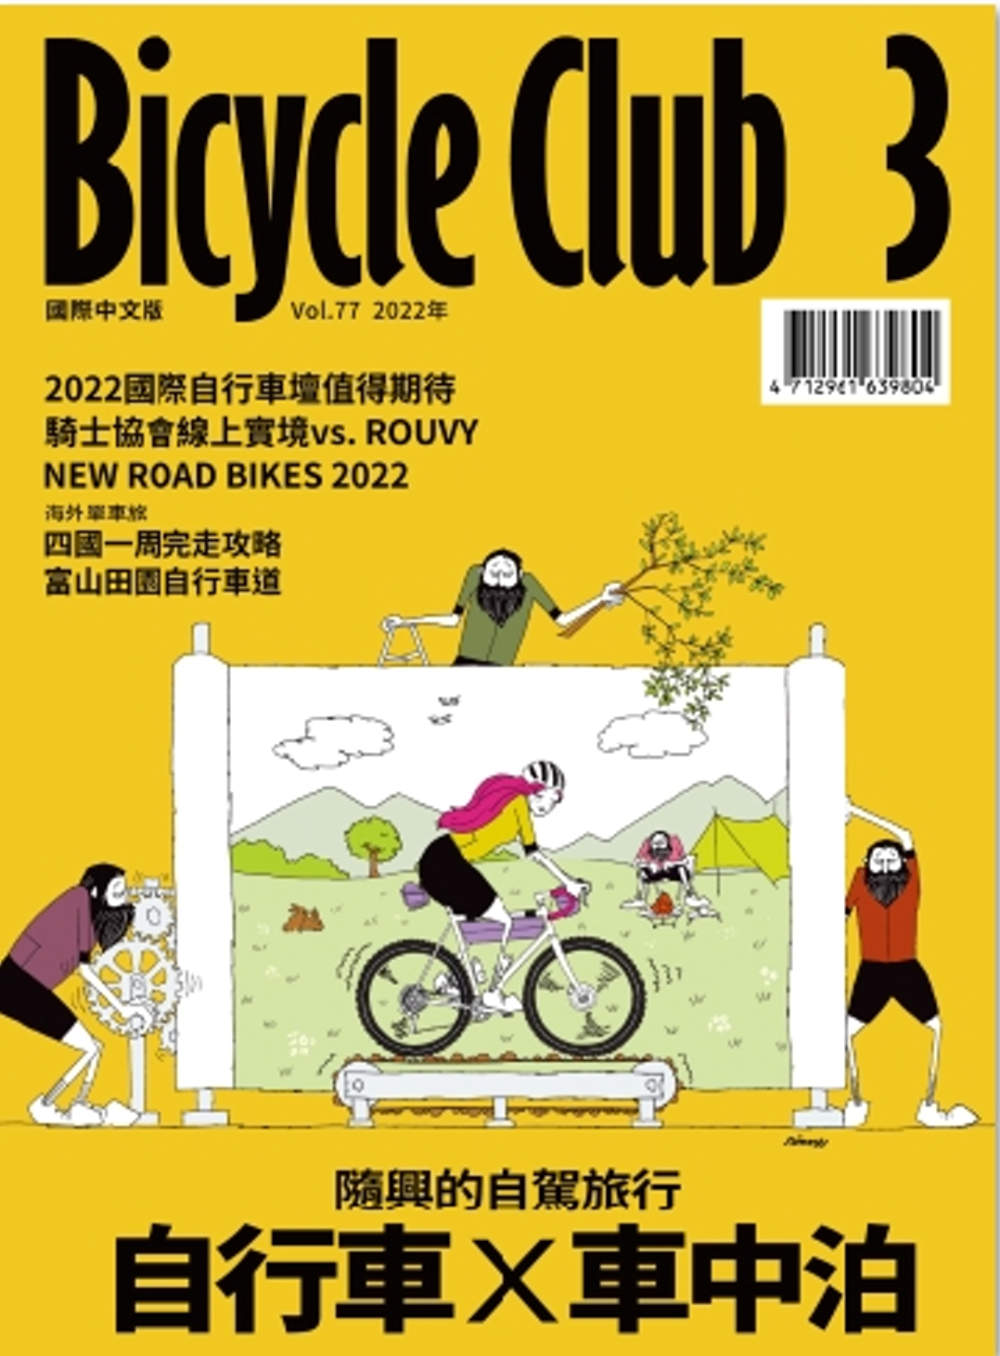 BiCYCLE CLUB 國際中文版 77